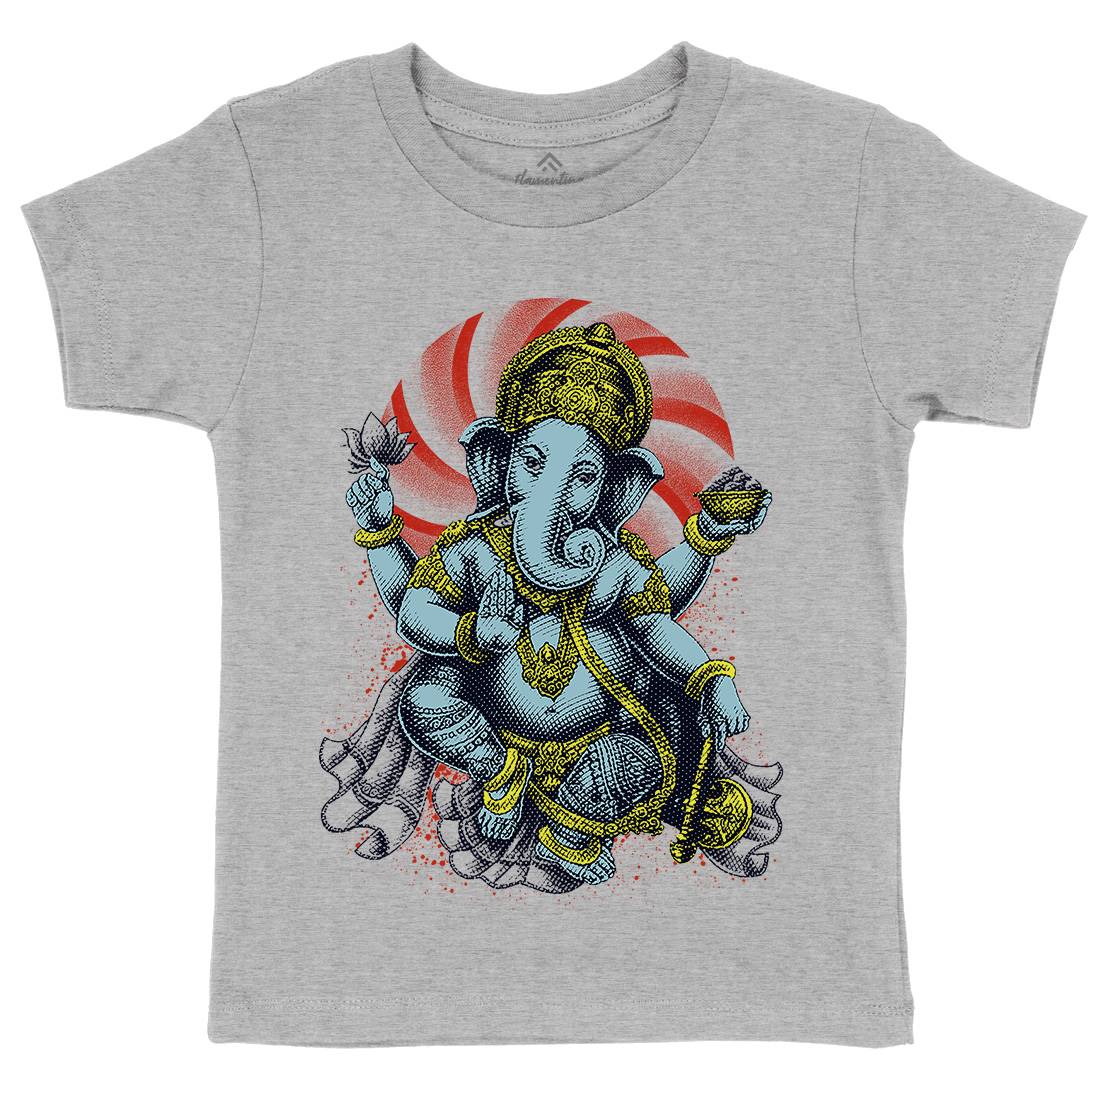 Hindu Goddess Kids Organic Crew Neck T-Shirt Asian D043